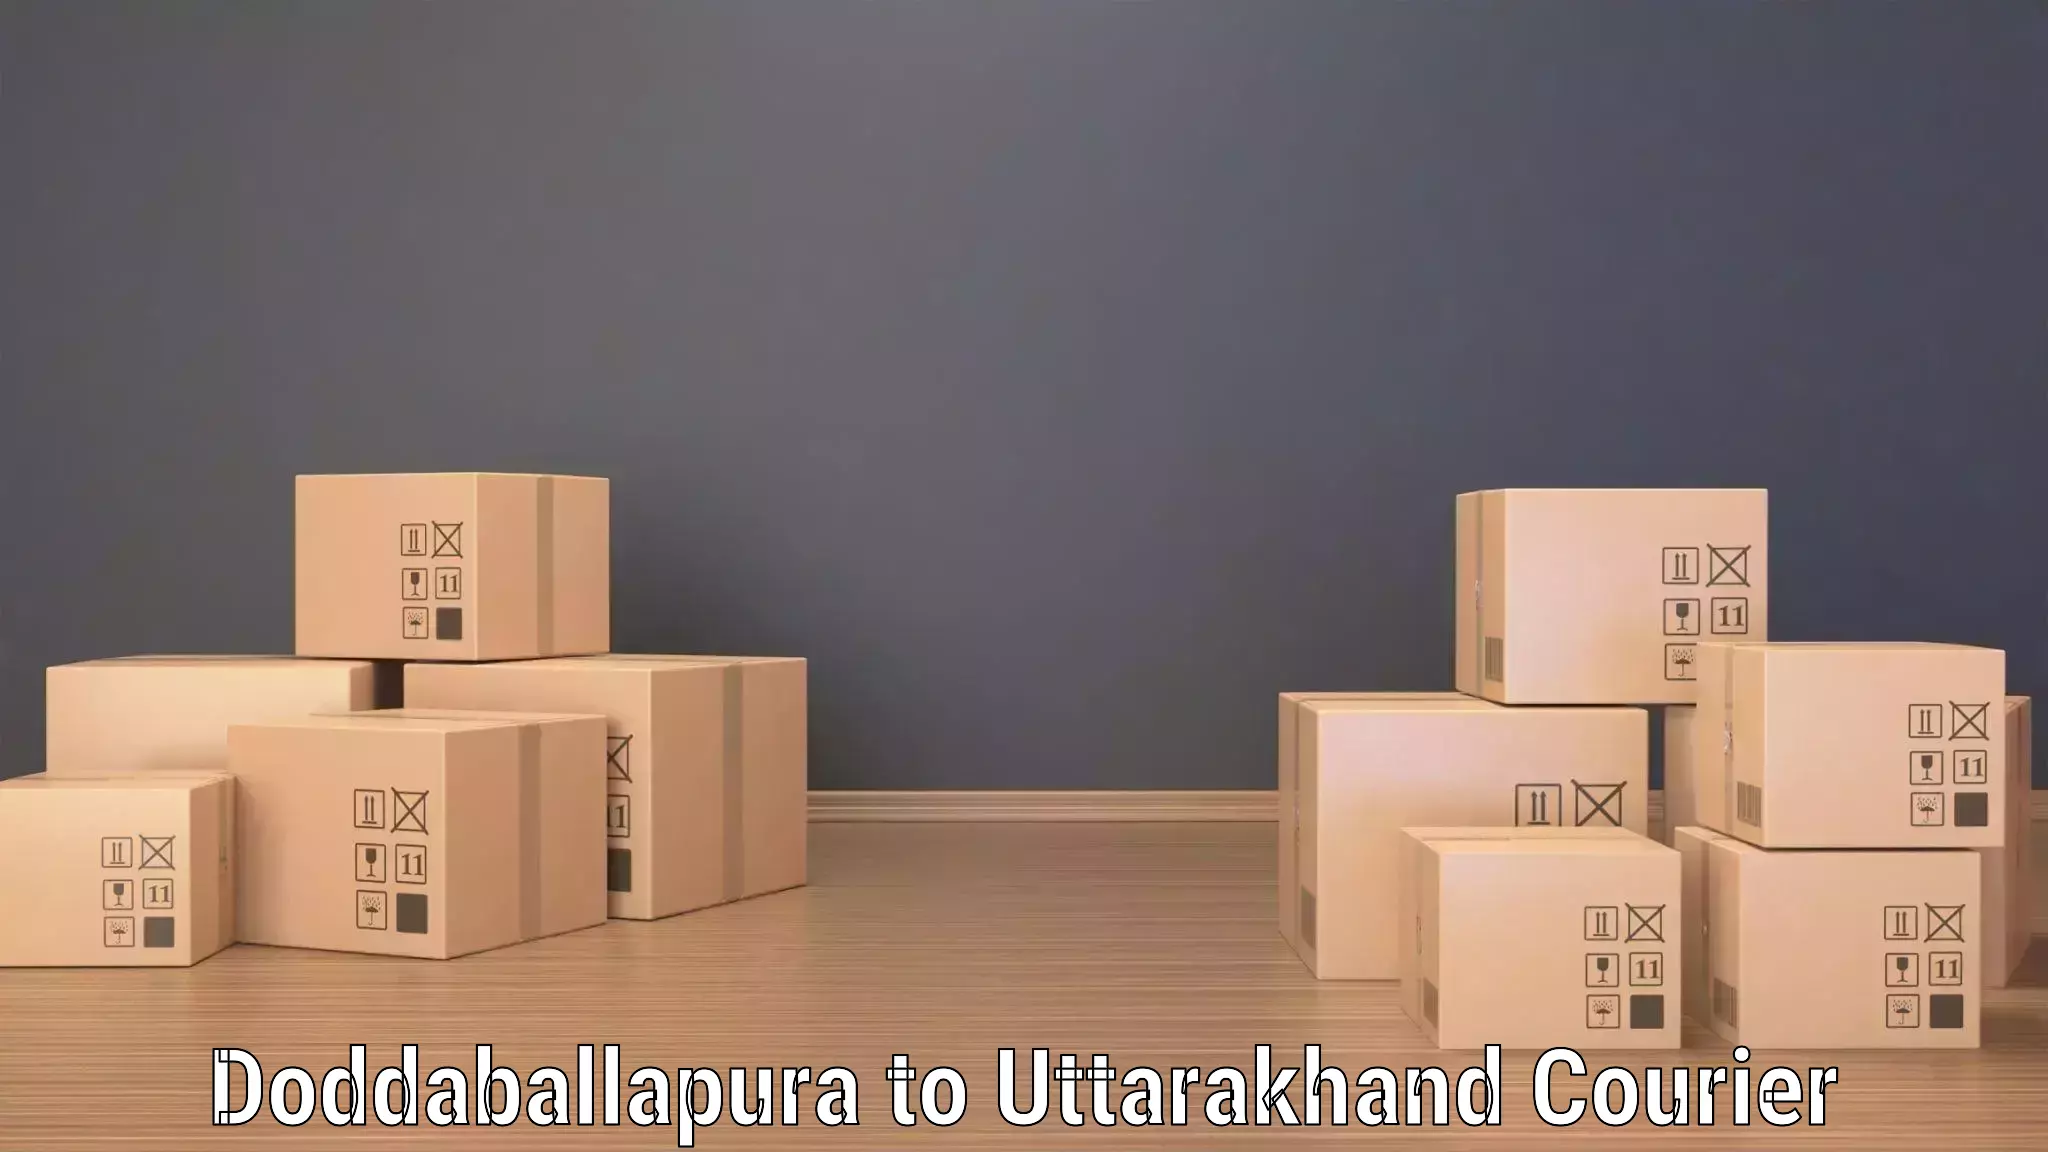 Package delivery network Doddaballapura to Ranikhet